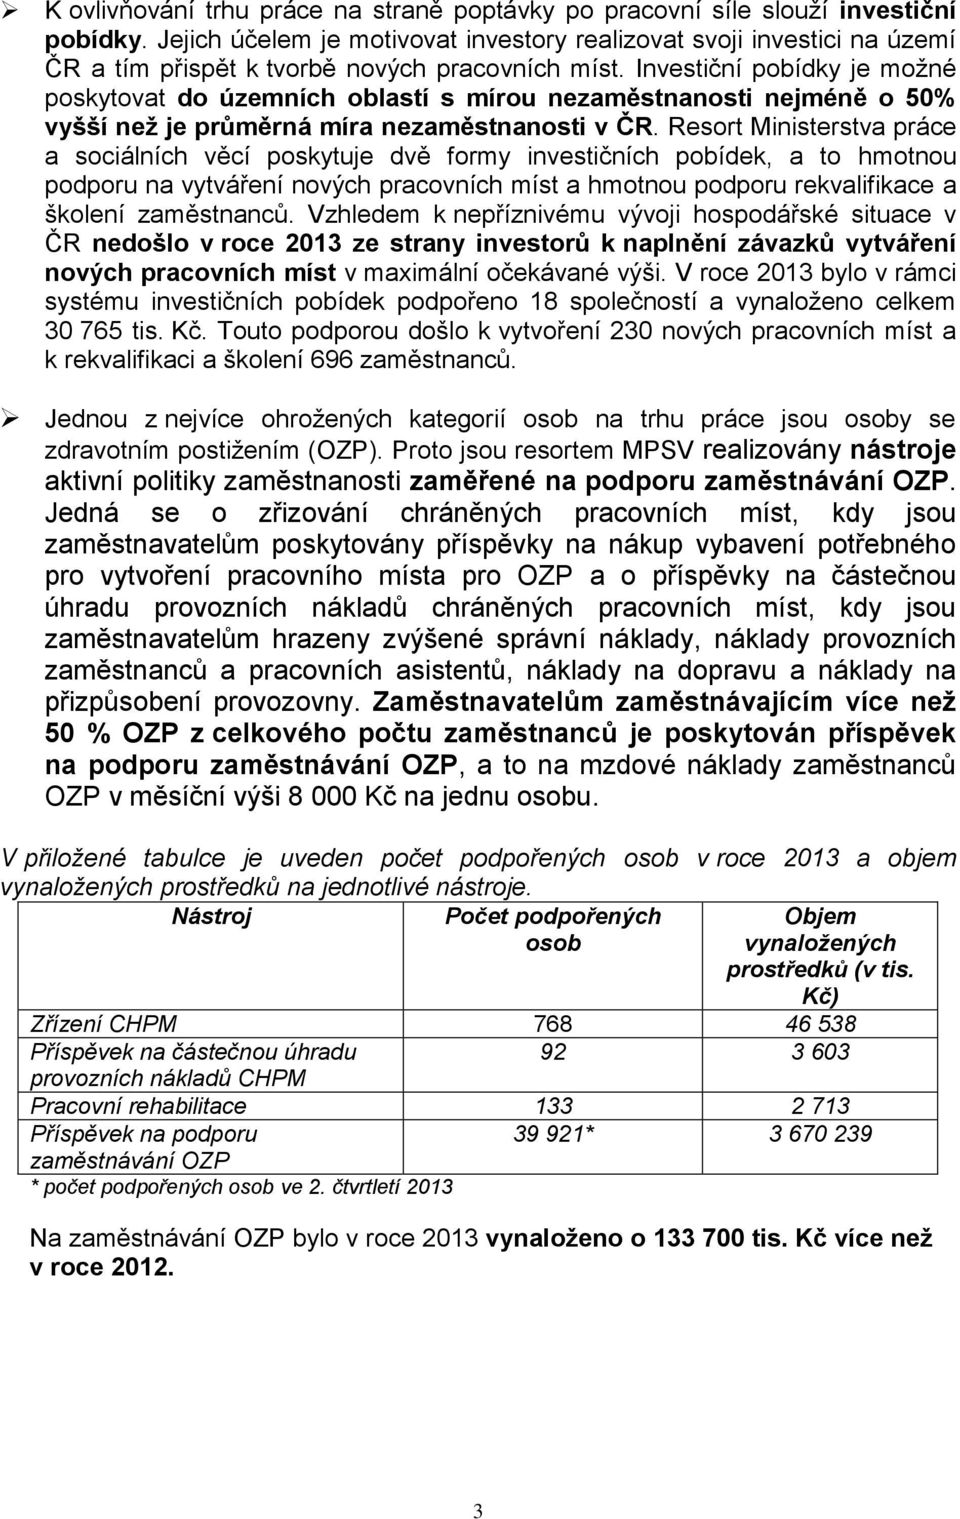 Investiční pobídky je možné poskytovat do územních oblastí s mírou nezaměstnanosti nejméně o 50% vyšší než je průměrná míra nezaměstnanosti v ČR.